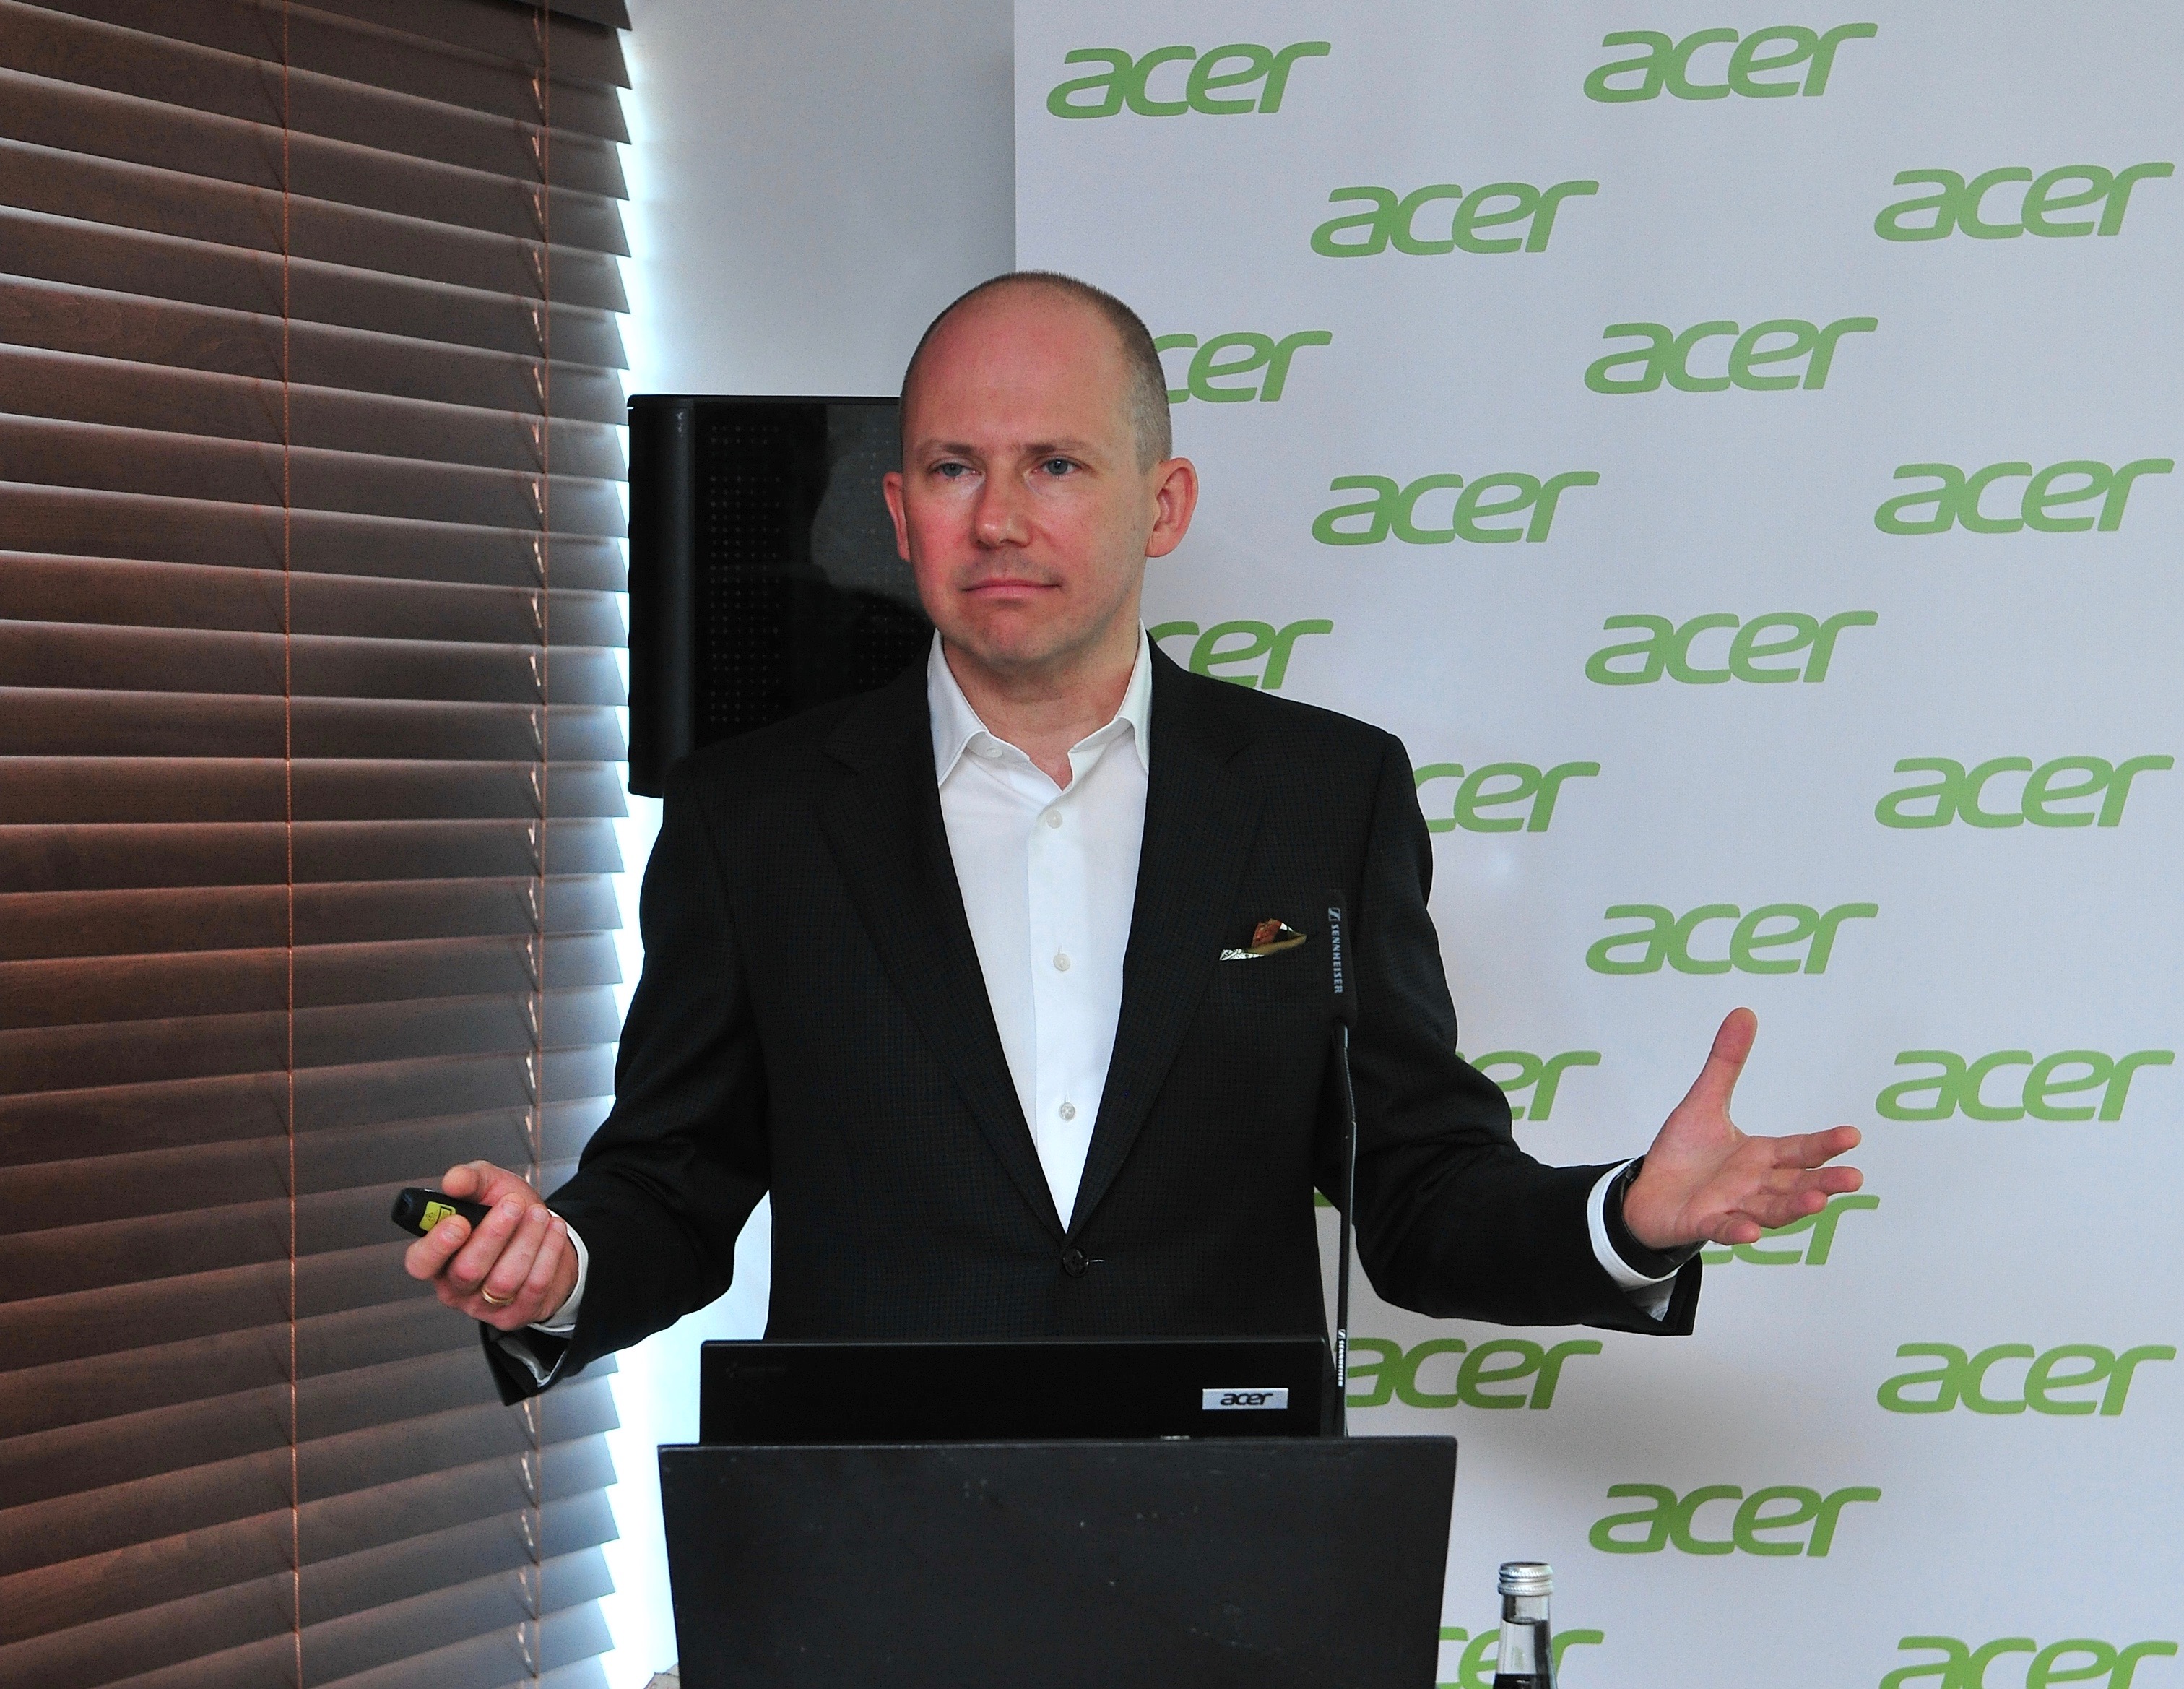 Acer tüketicilere “değer” sunmaya odaklanıyor